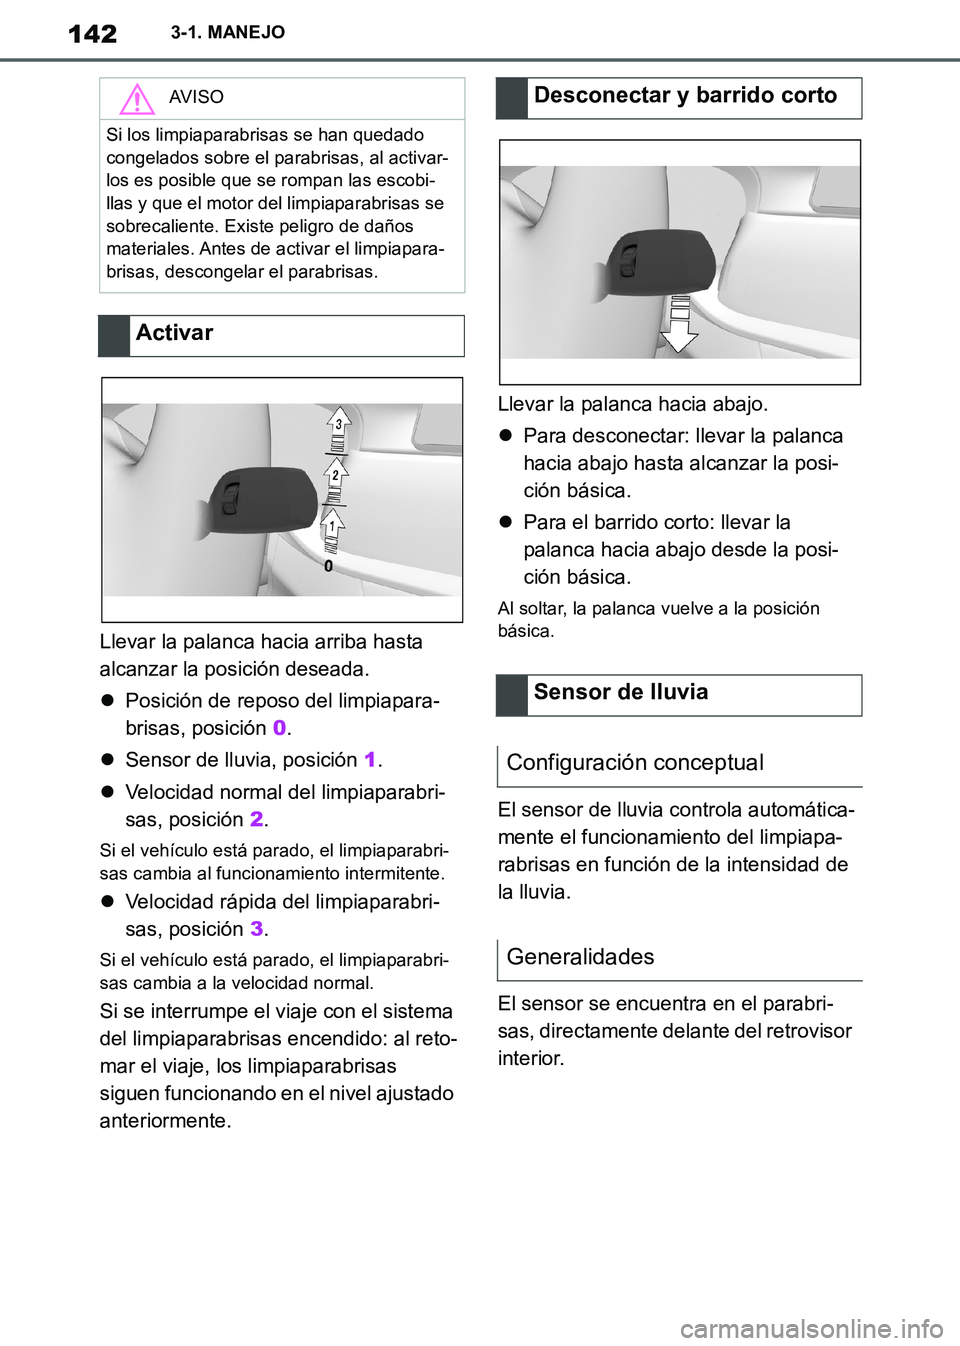 TOYOTA SUPRA 2019  Manuale de Empleo (in Spanish) 142
Supra Owners Manual_ES
3-1. MANEJO
Llevar la palanca hacia arriba hasta 
alcanzar la posición deseada.
Posición de reposo del limpiapara-
brisas, posición 0.
Sensor de lluvia, posición 